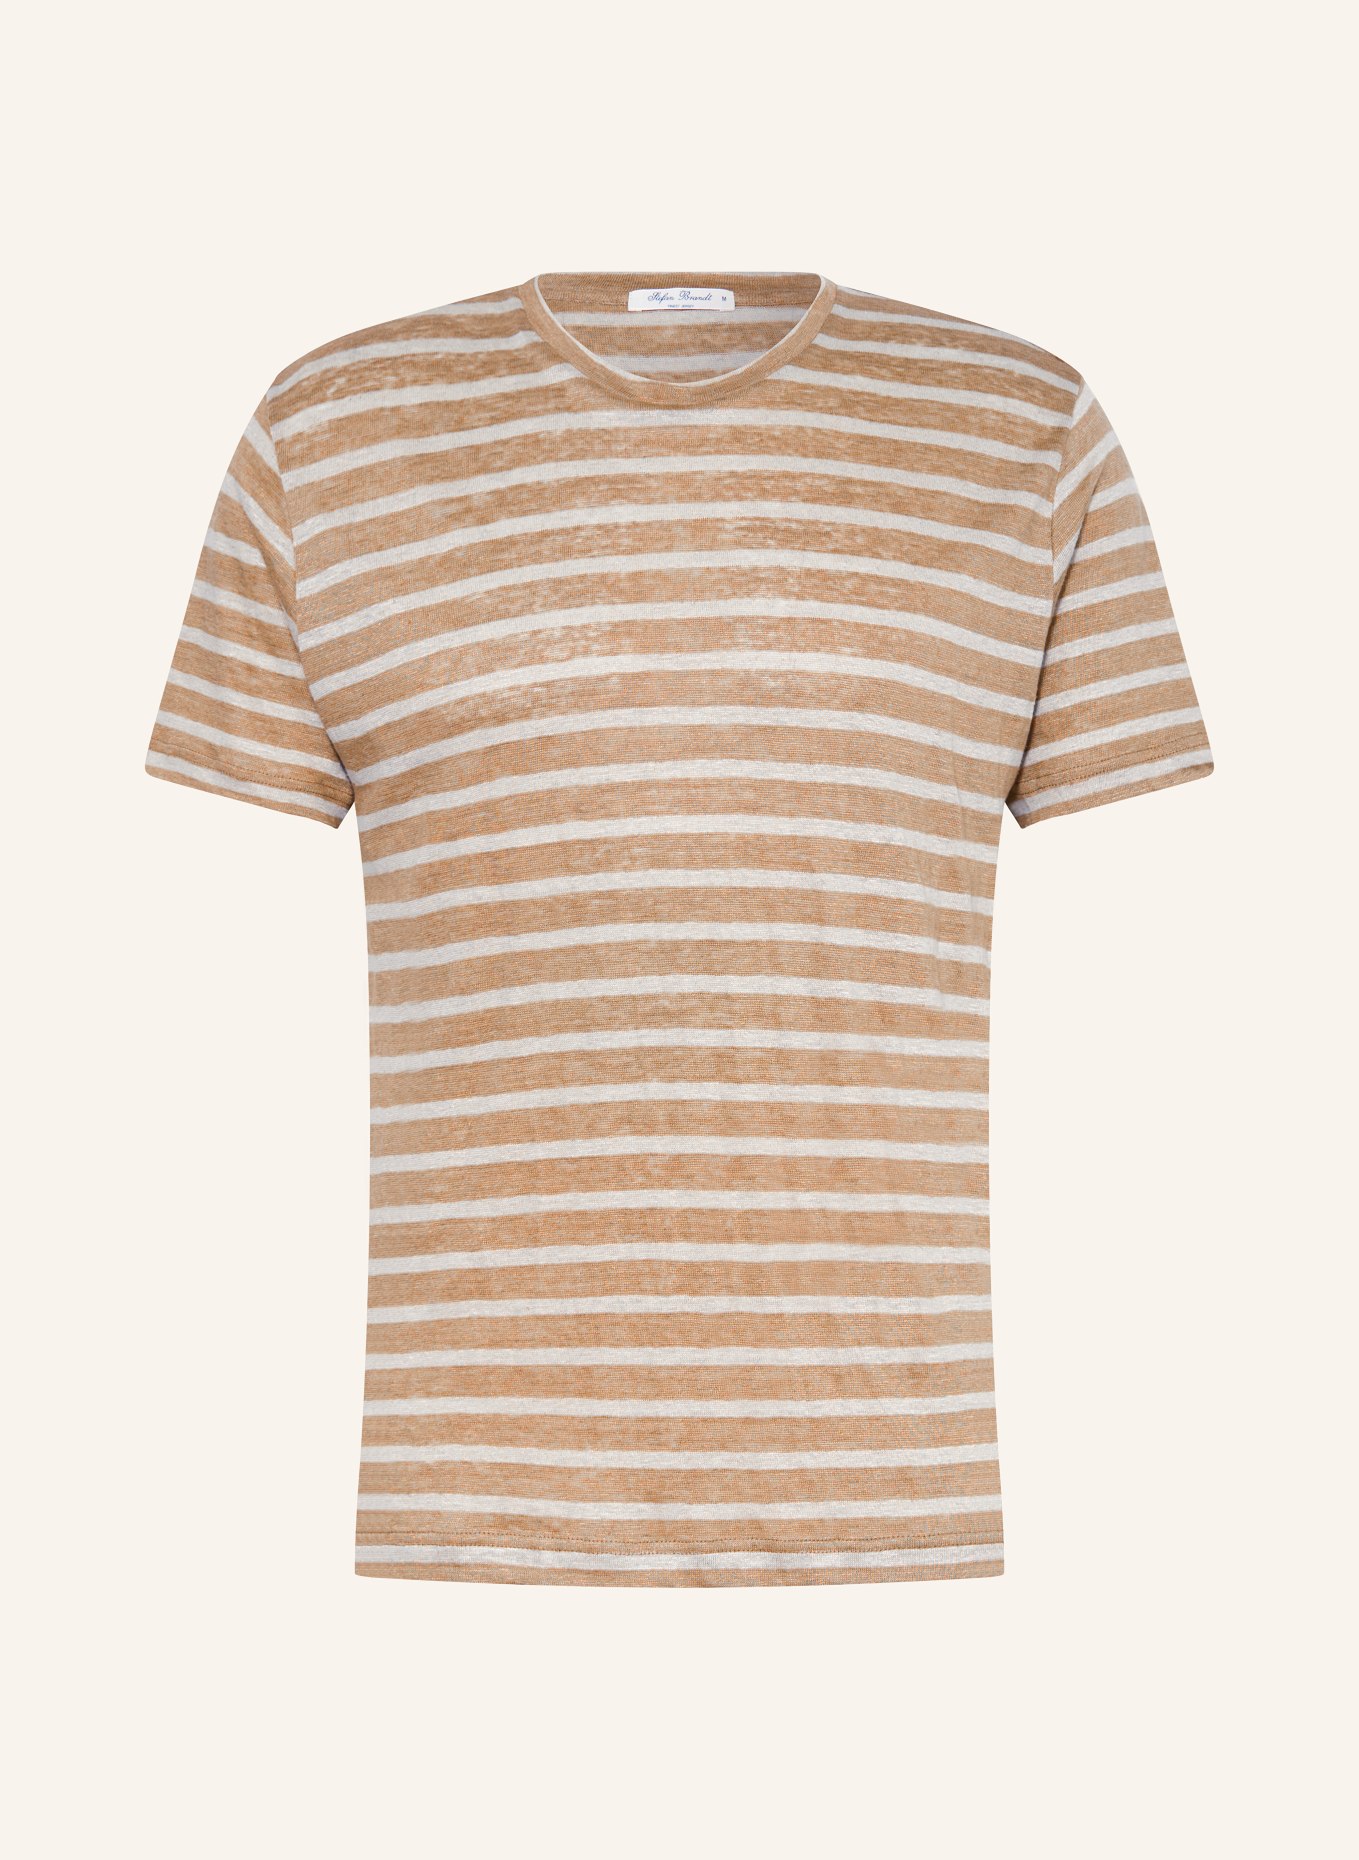 Stefan Brandt T-Shirt aus Leinen, Farbe: BEIGE/ CREME (Bild 1)